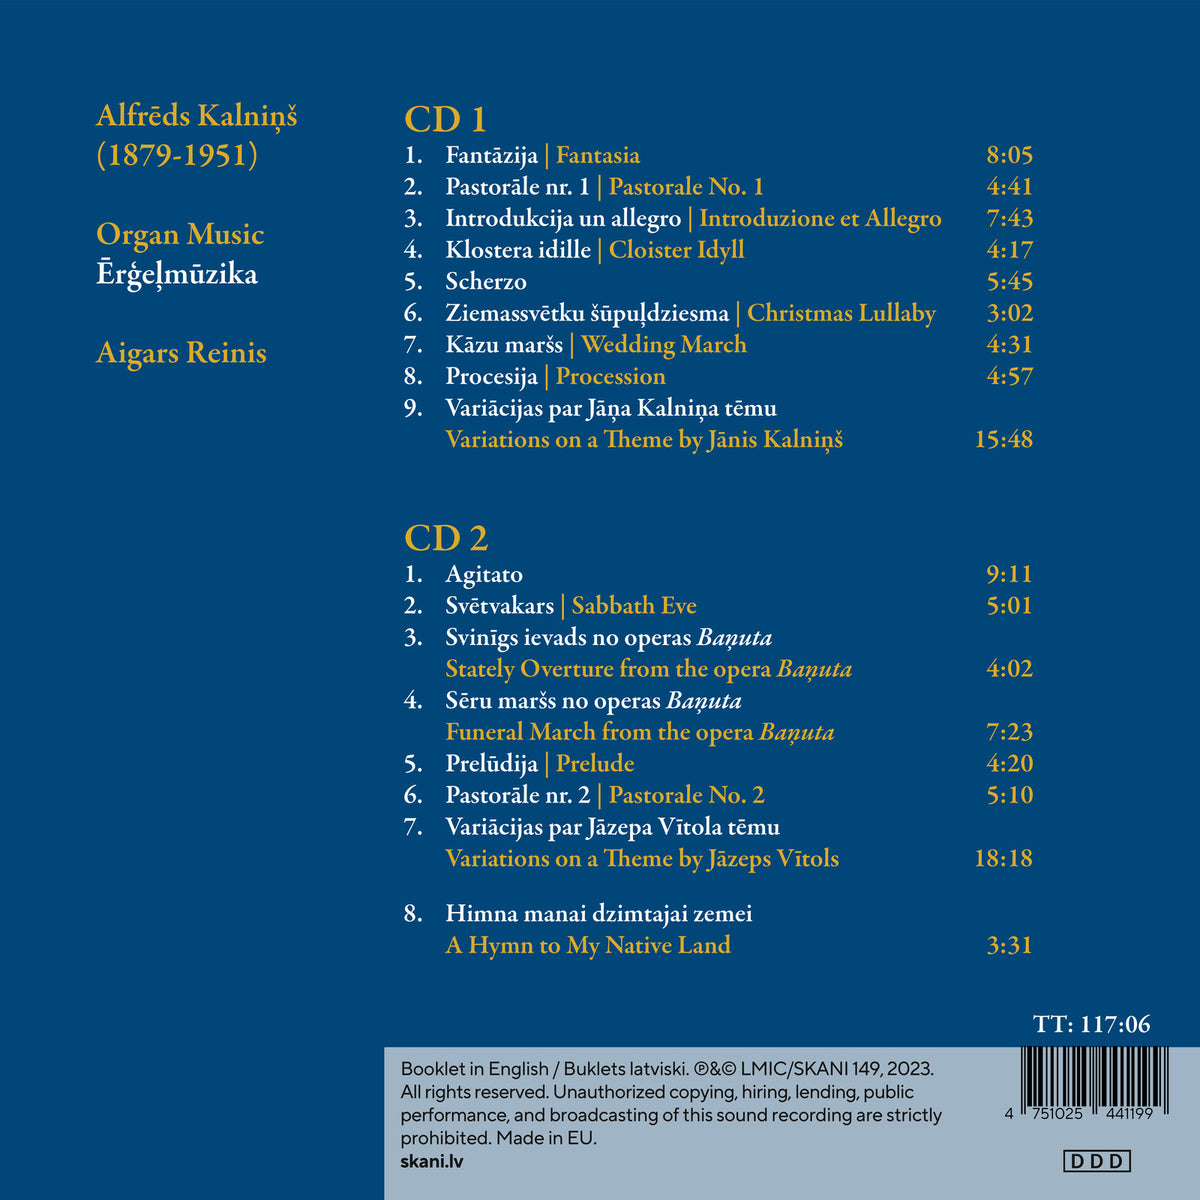 Aigars Reinis - Alfreds Kalnins: Organ Music - LMIC149